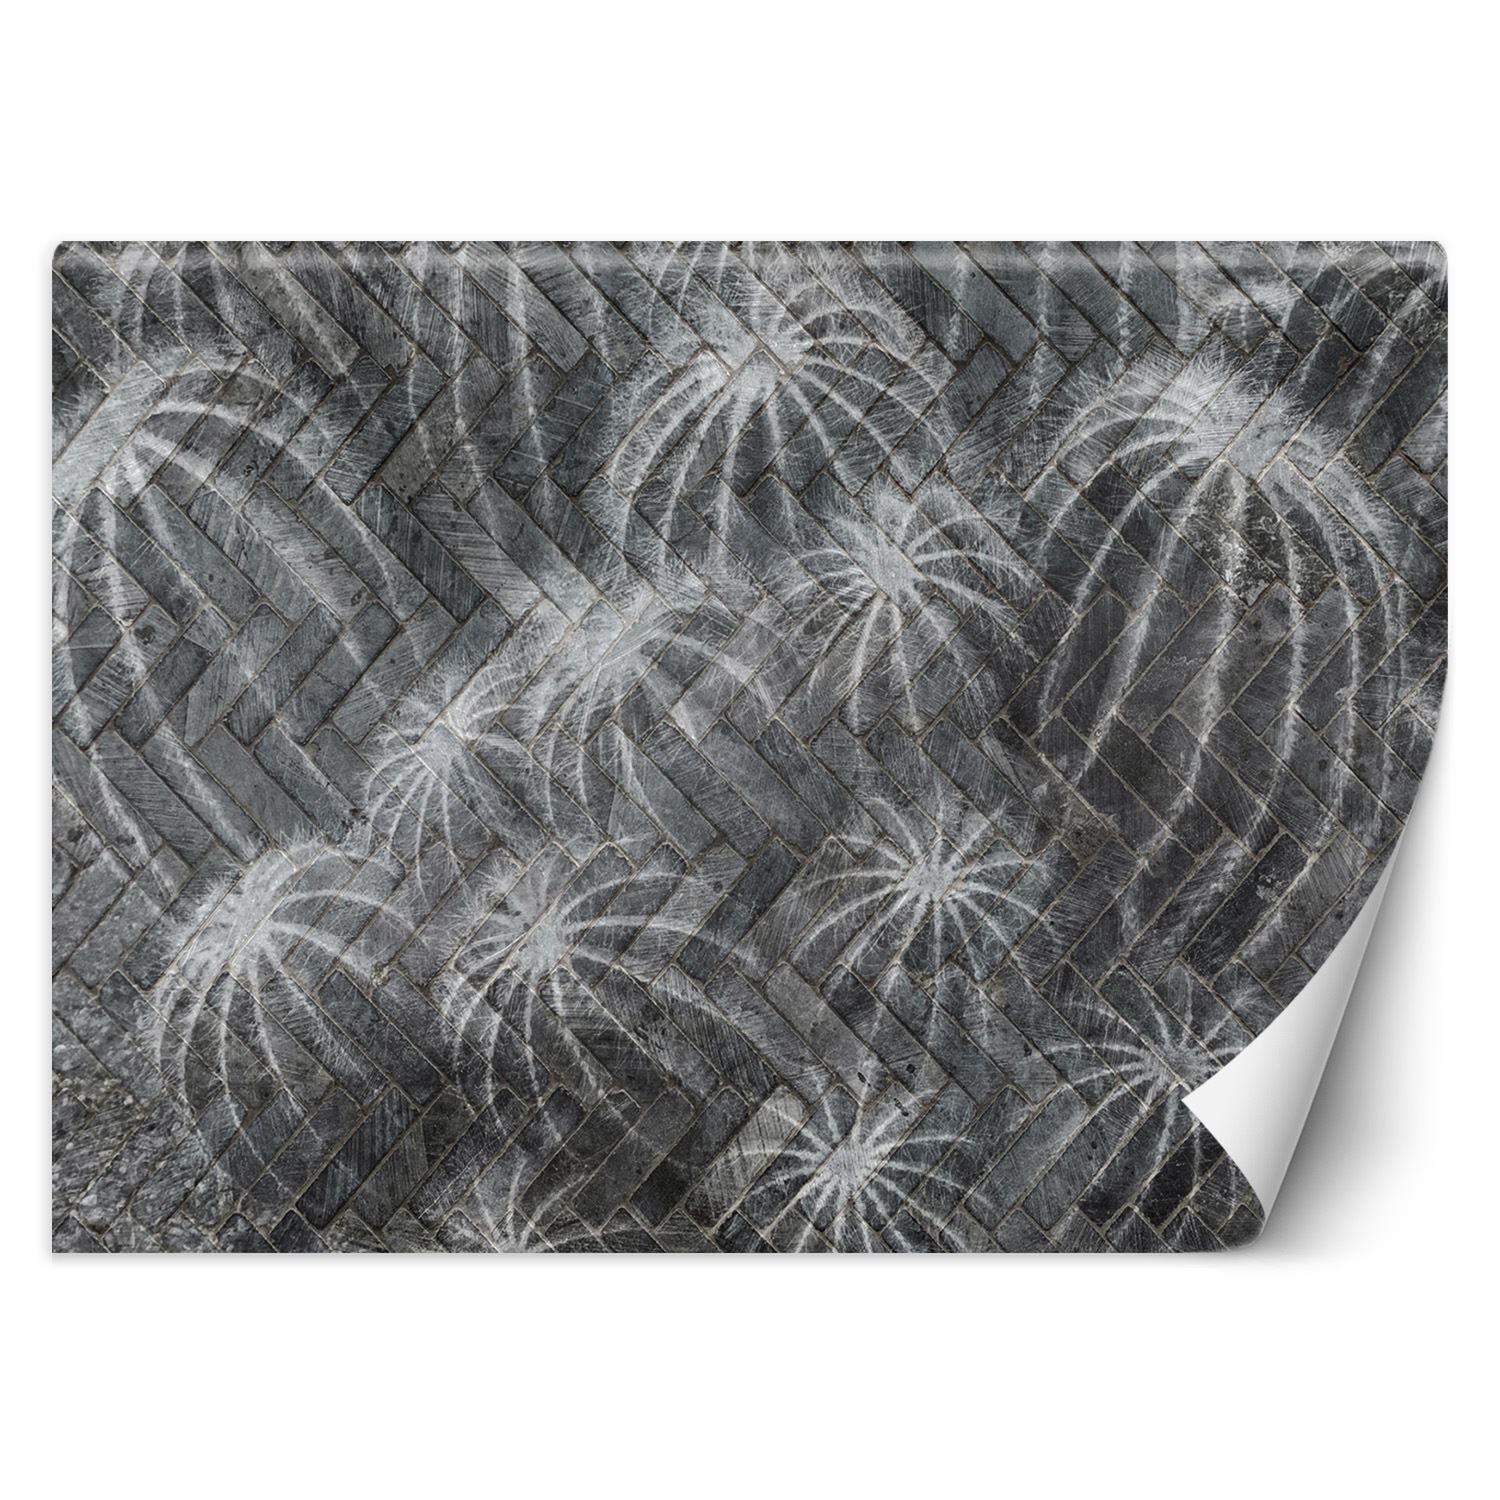 Trend24 – Behang – Cactussen In Grijs – Behangpapier – Behang Woonkamer – Fotobehang – 450x315x2 cm – Incl. behanglijm